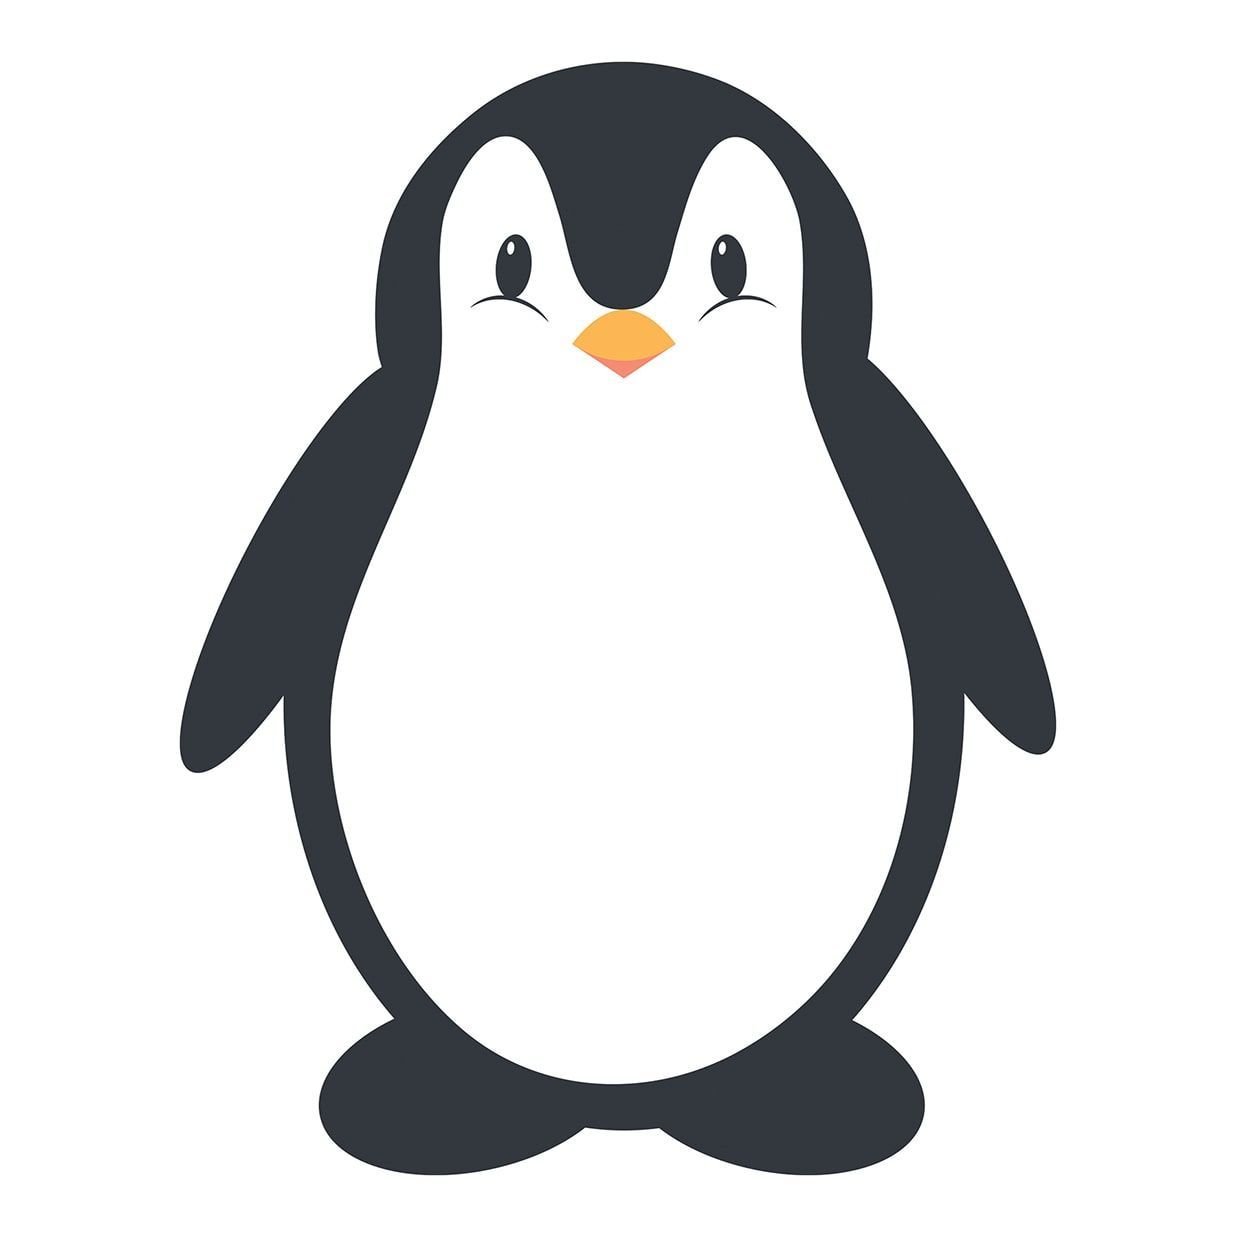 Пингвин раскраска для детей